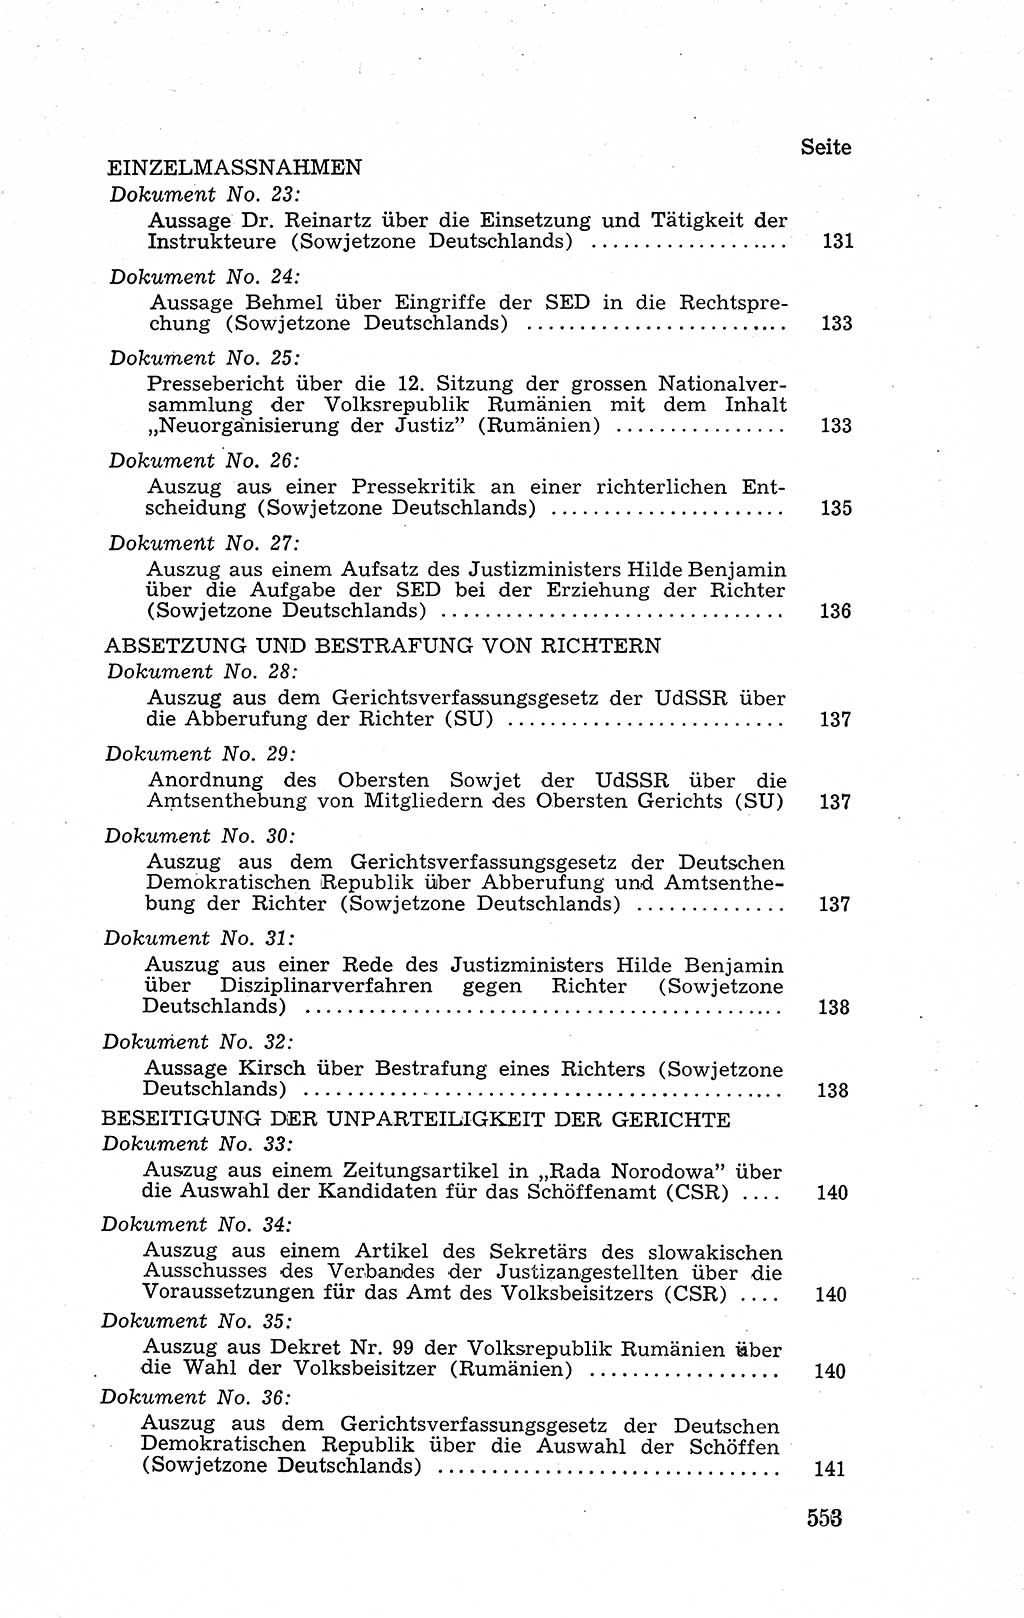 Recht in Fesseln, Dokumente, Internationale Juristen-Kommission [Bundesrepublik Deutschland (BRD)] 1955, Seite 553 (R. Dok. IJK BRD 1955, S. 553)